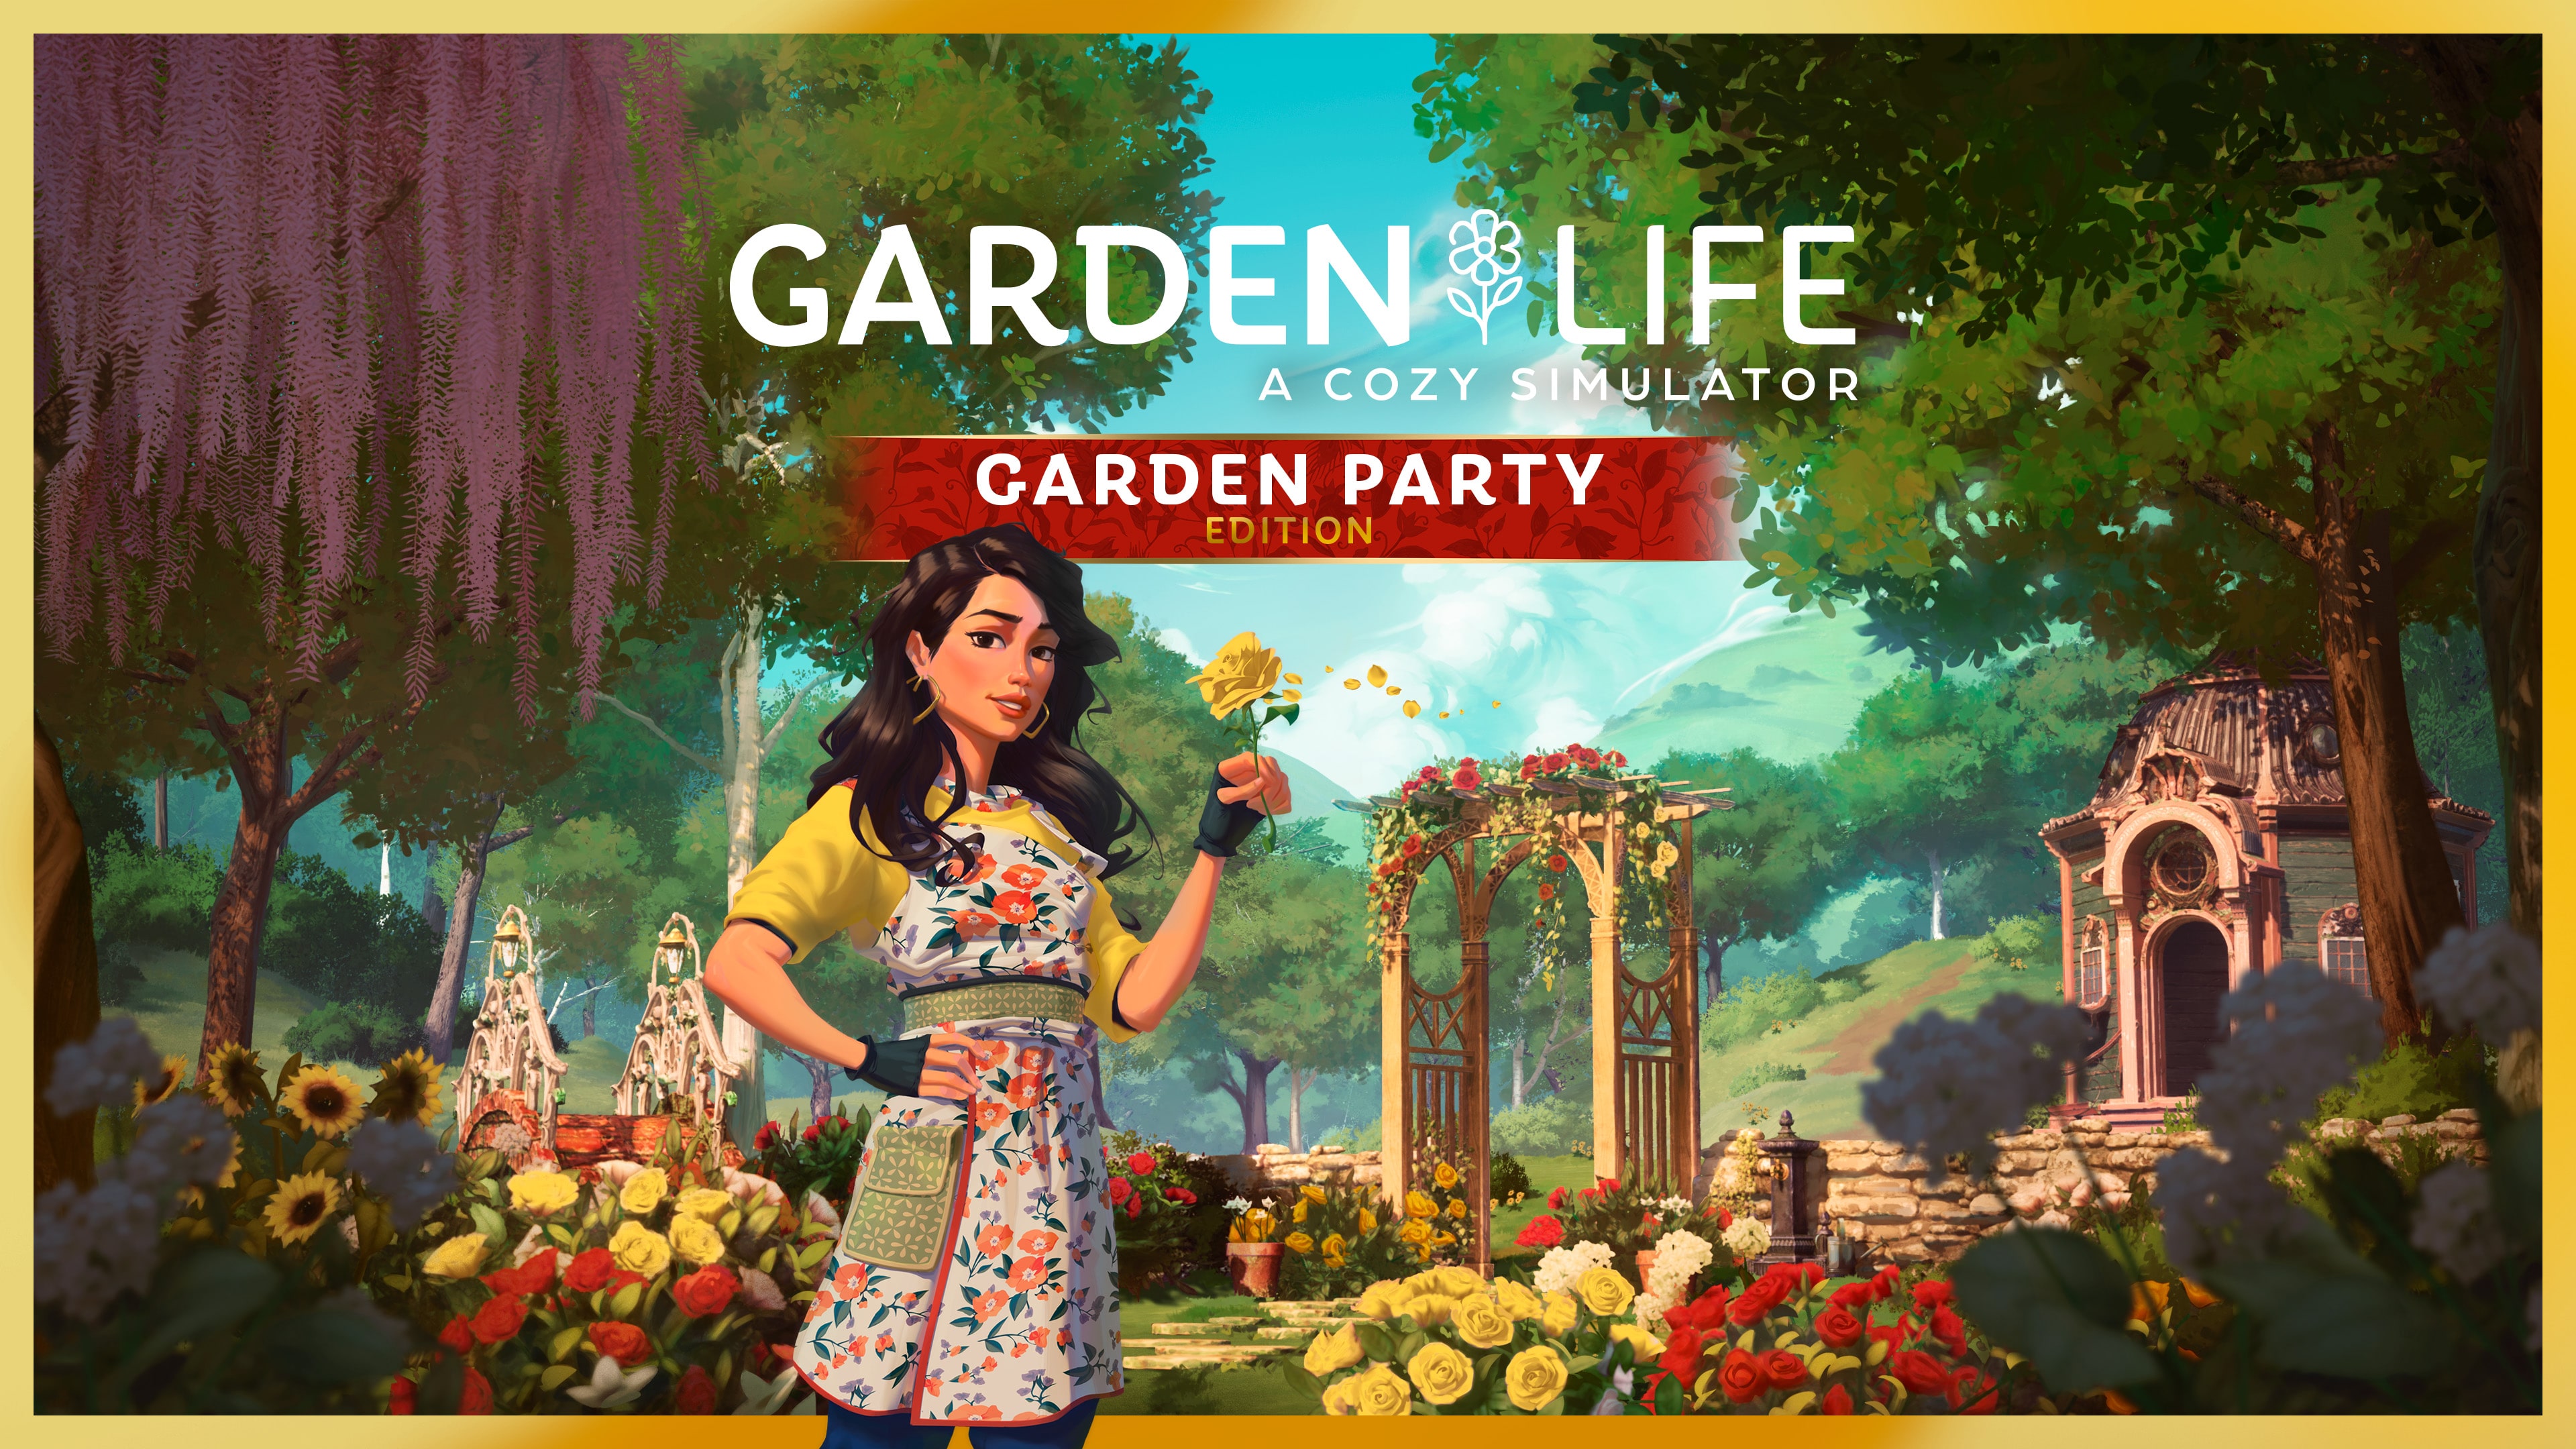 Garden Party Edition